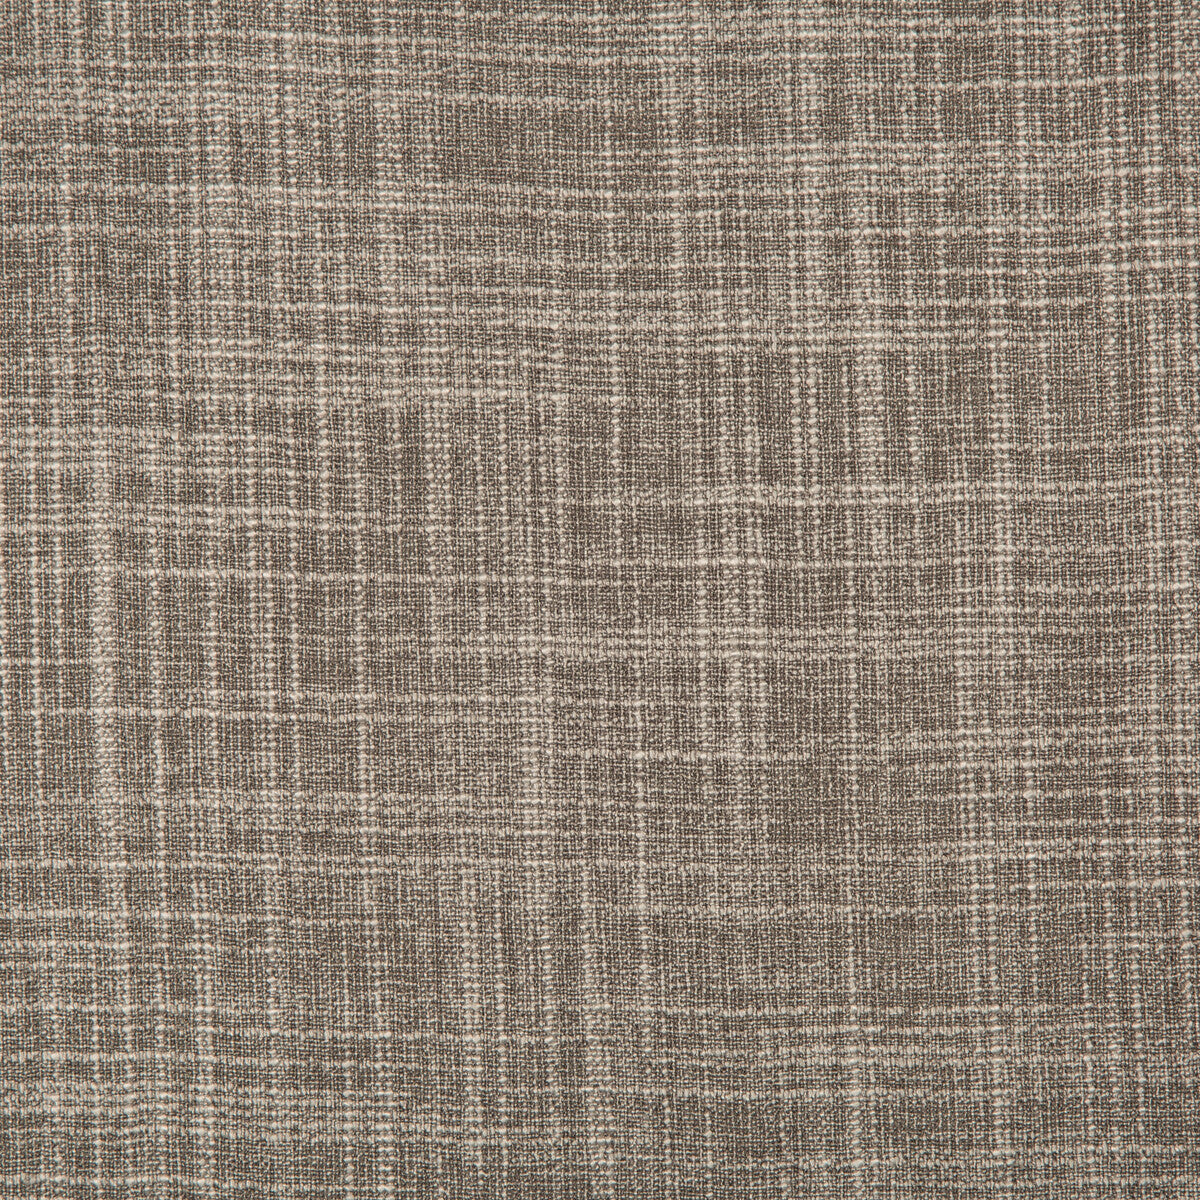 Kravet Basics fabric in 4674-21 color - pattern 4674.21.0 - by Kravet Basics